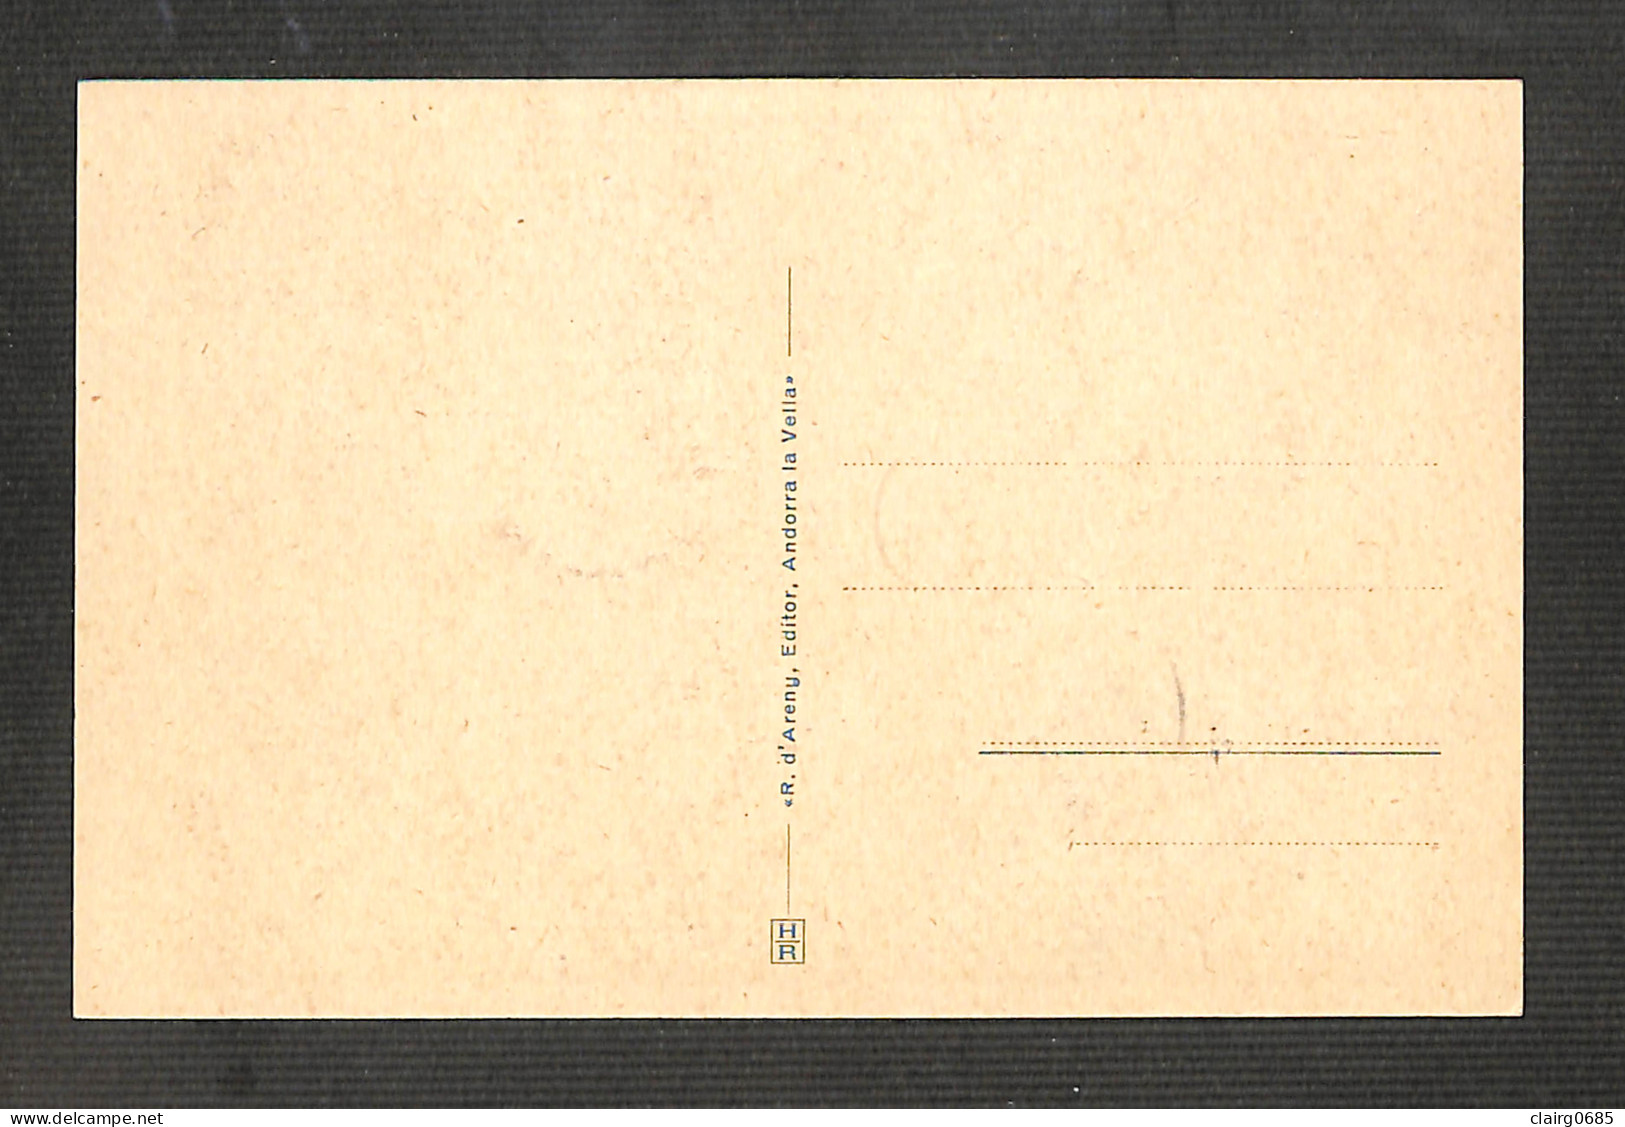 VALLÉES D'ANDORRE - Carte MAXIMUM 1943 - ANDORRE LA VIEILLE - Gorges De Sant Julia - Cartes-Maximum (CM)